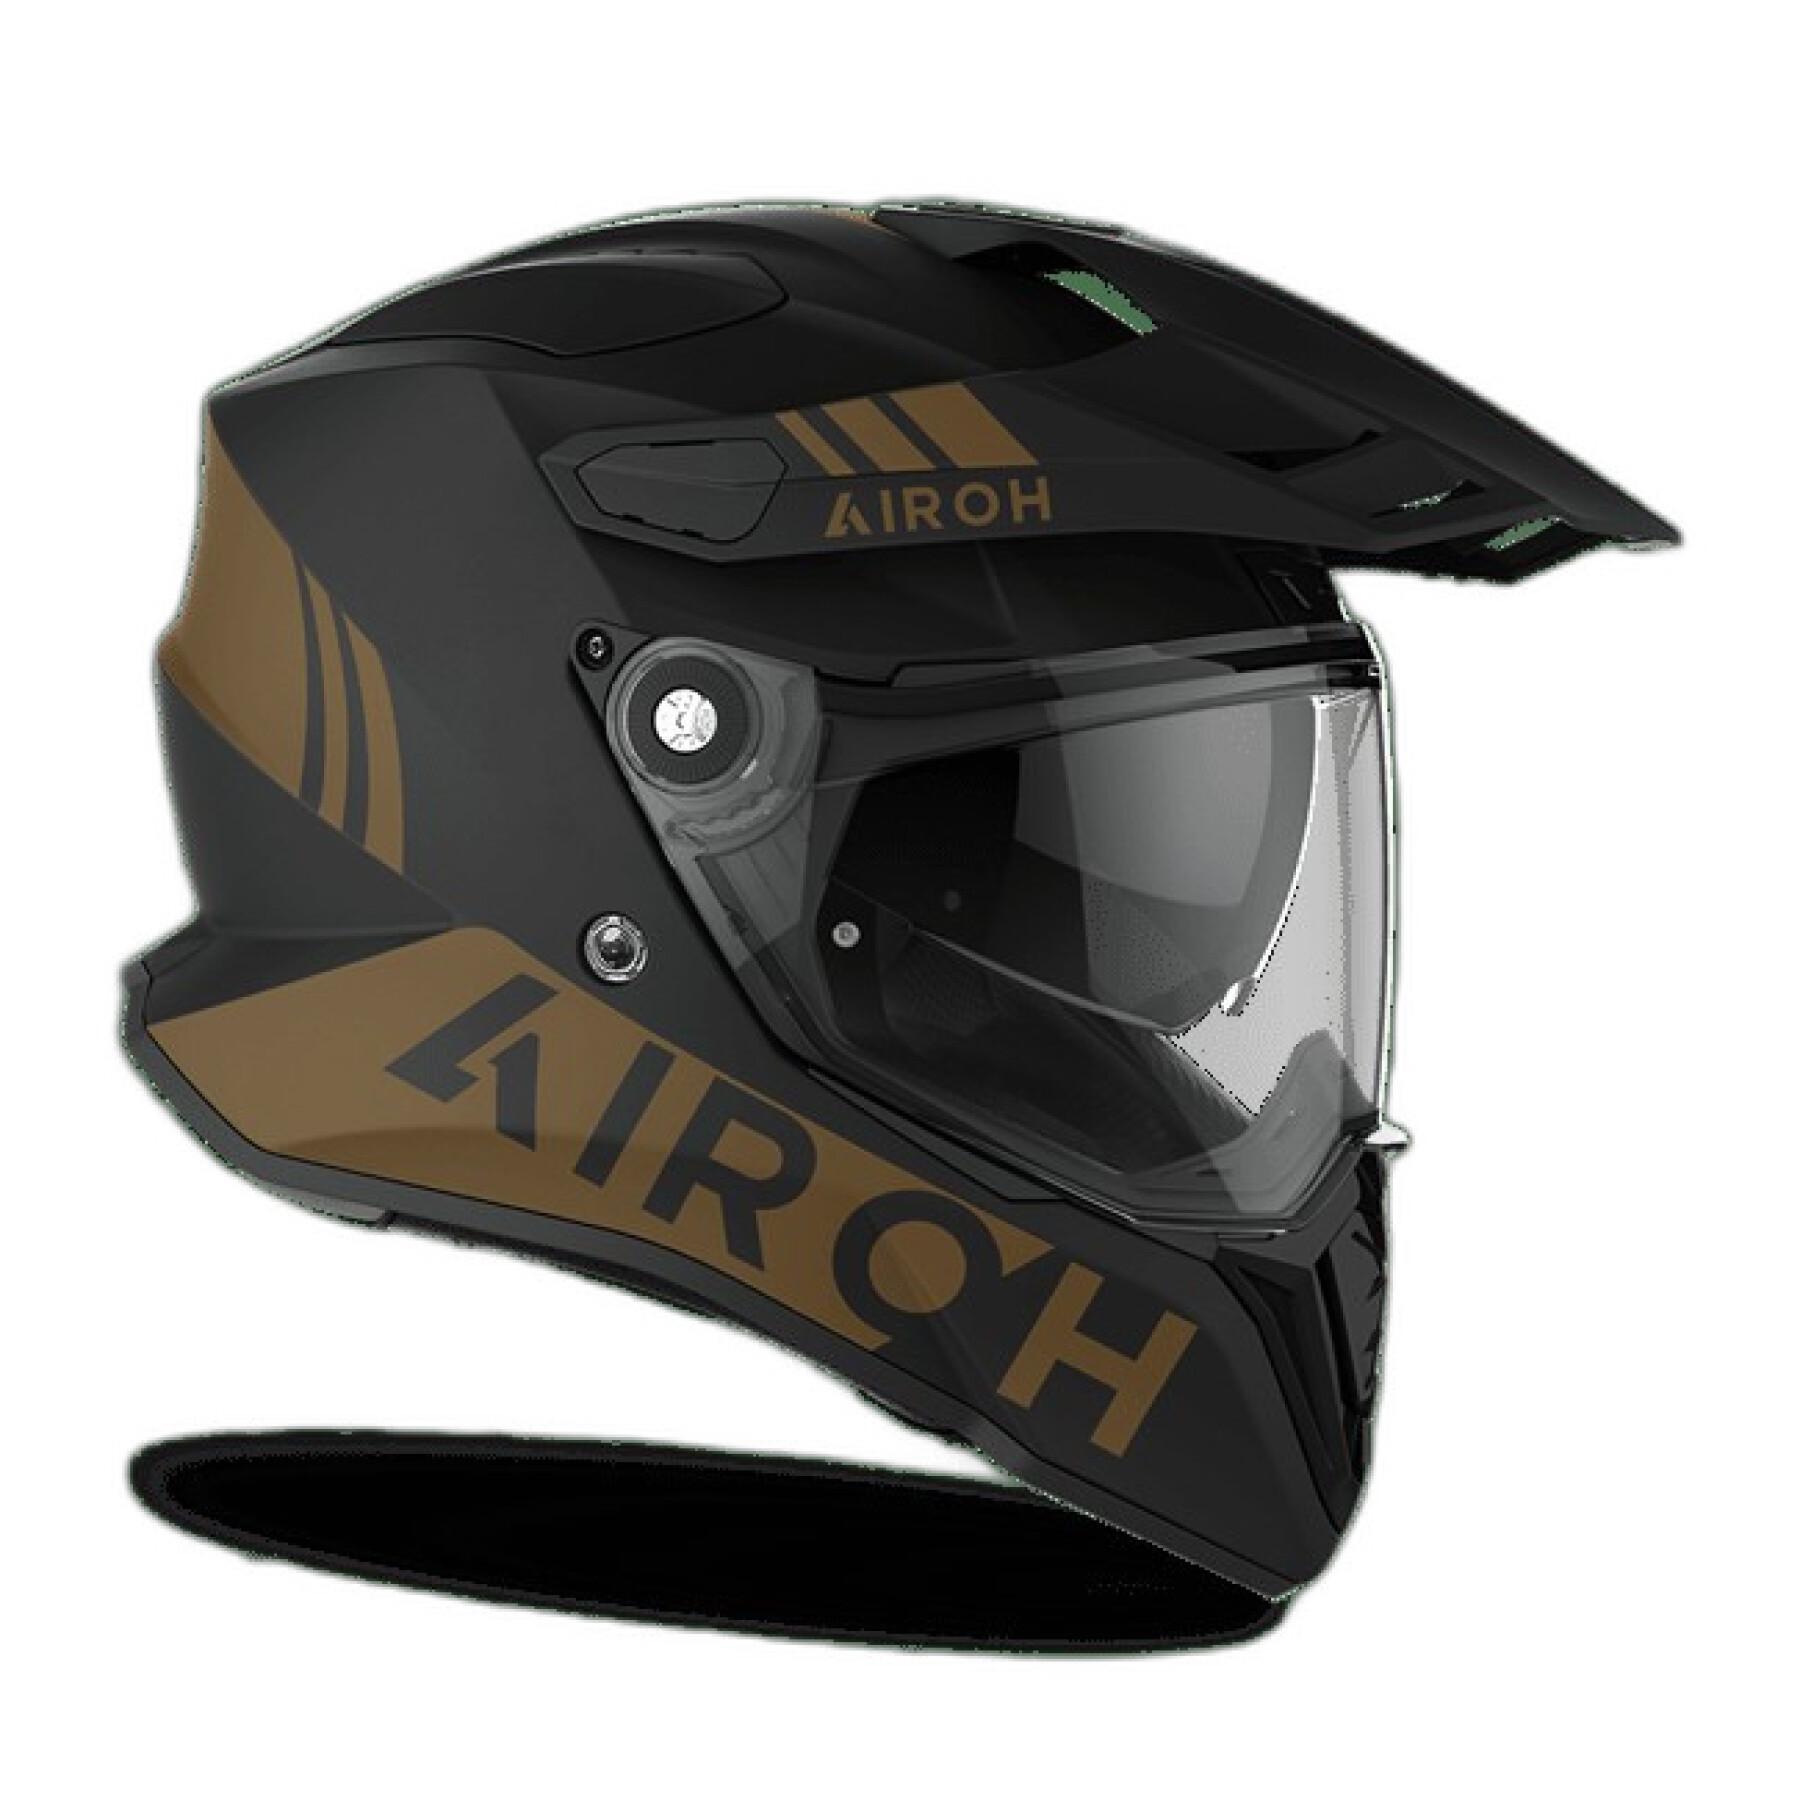 Motorcycle helmet Airoh commander